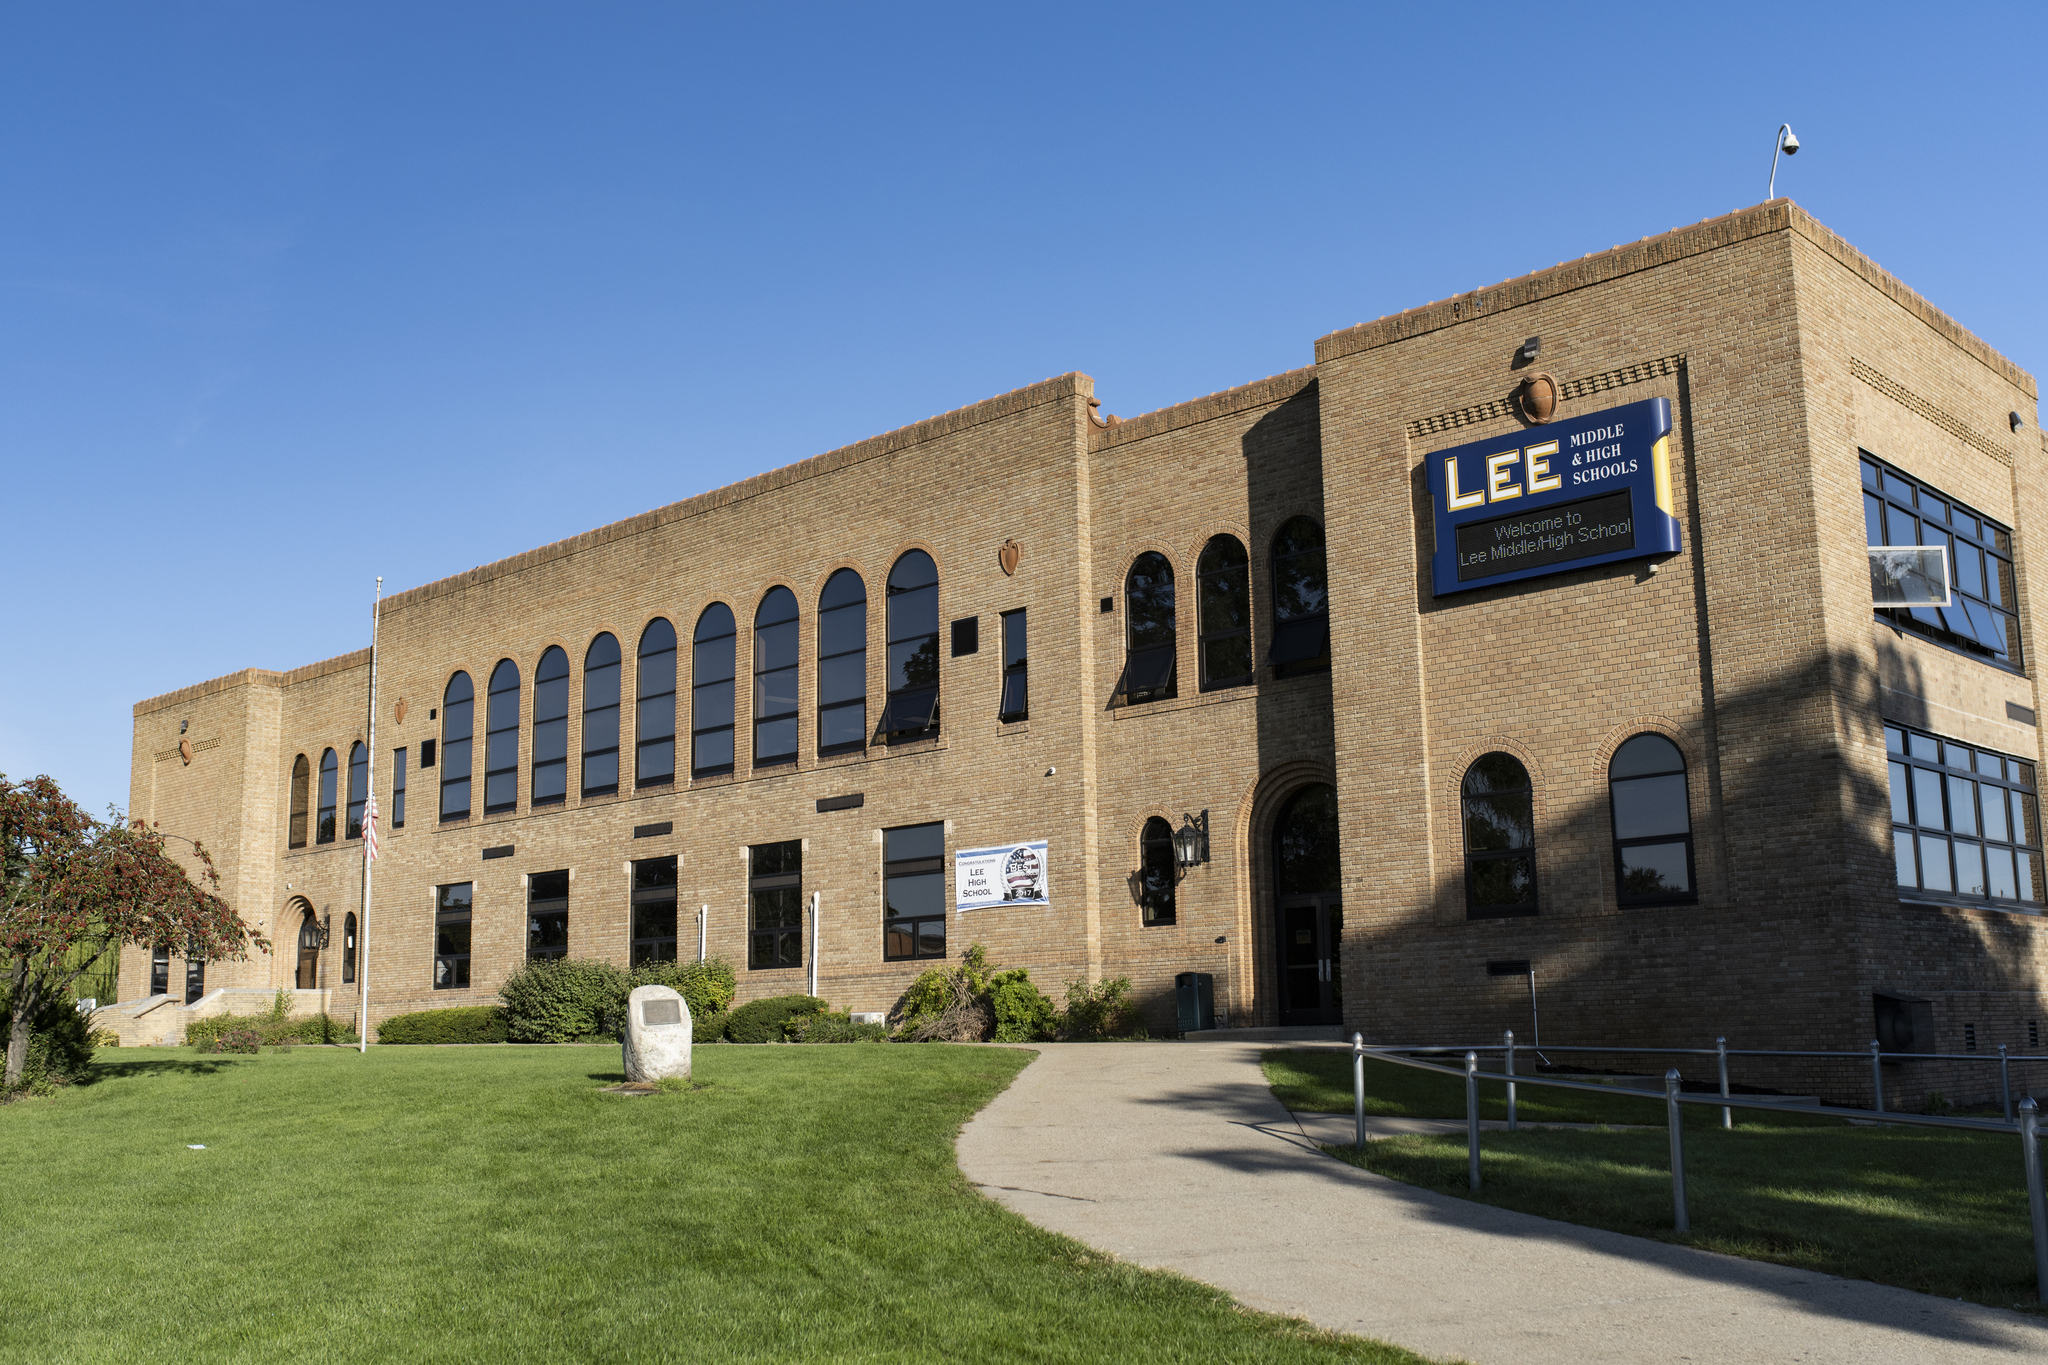 Lee MS/HS Building